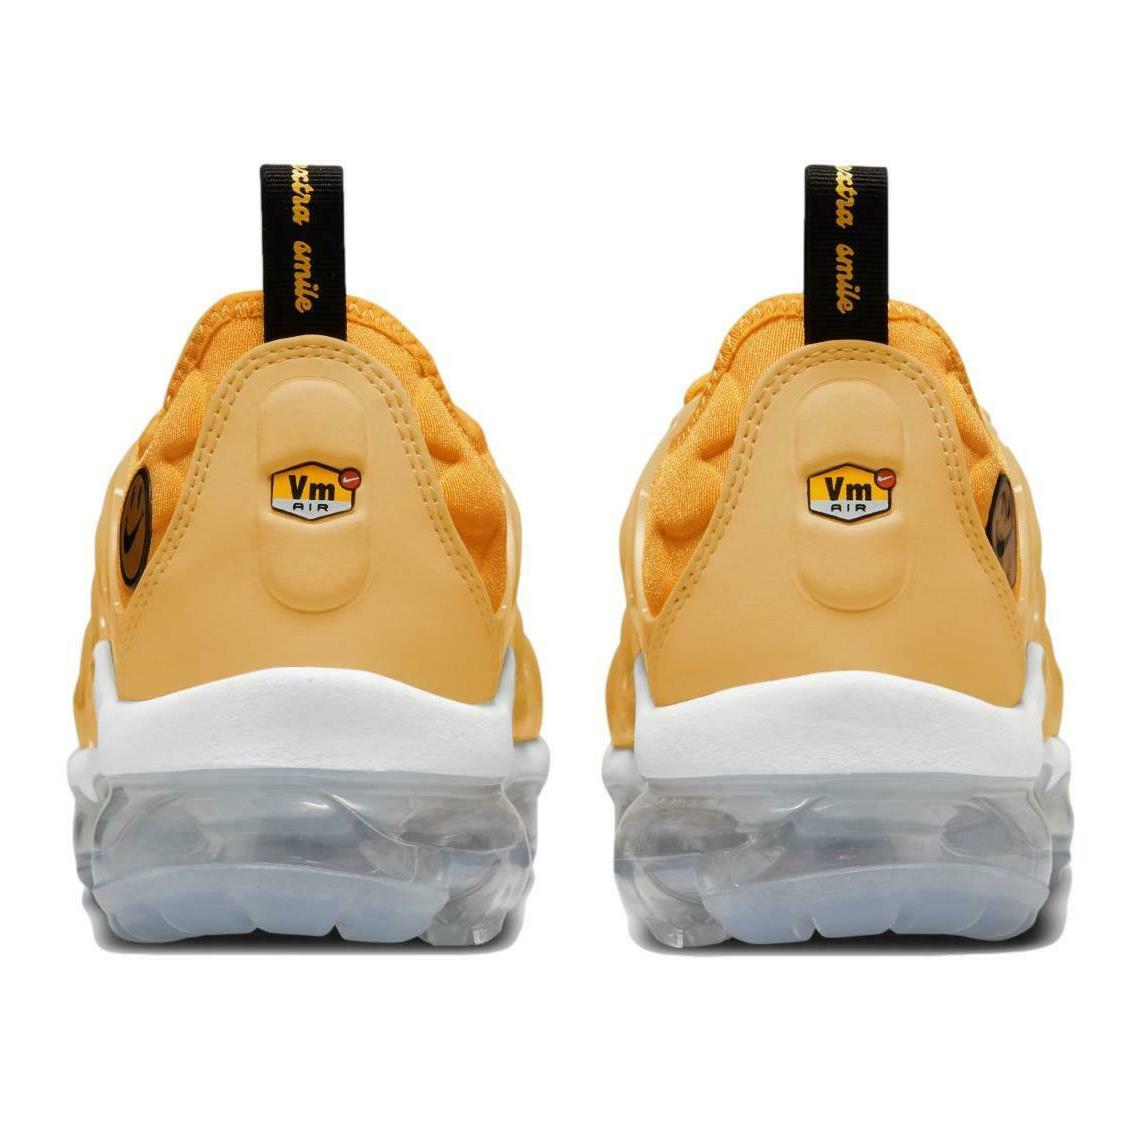 women's nike air vapormax plus running shoes yellow